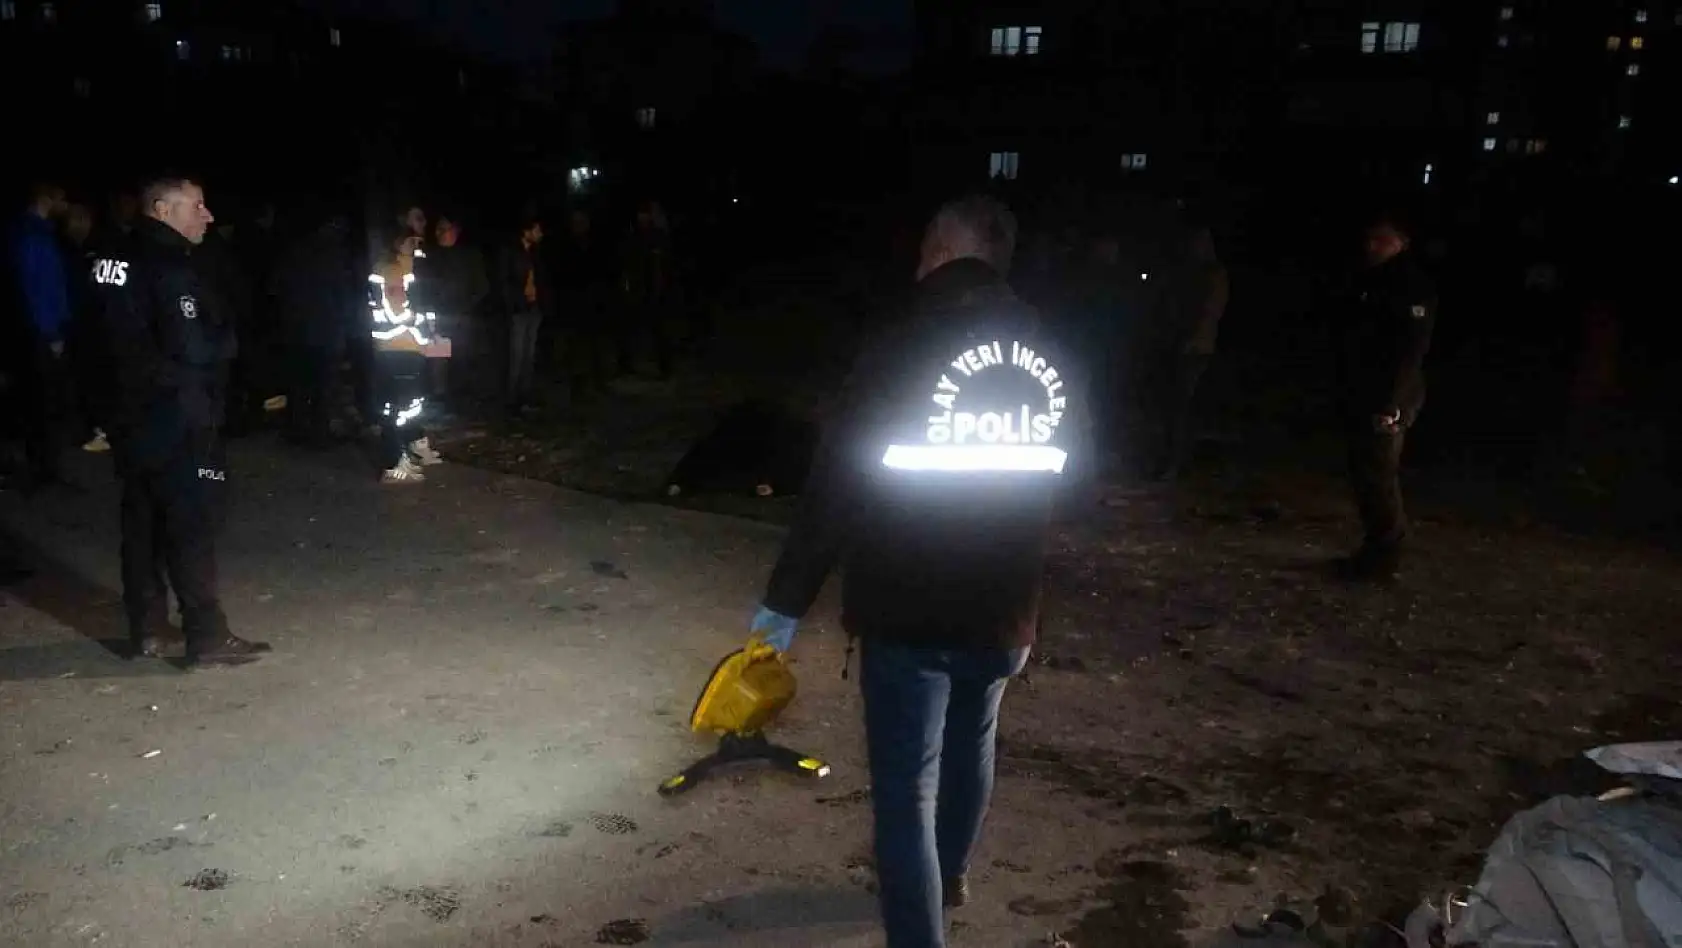 Malatya'da kamyonet yayaların arasına daldı 1 ölü, 1 yaralı